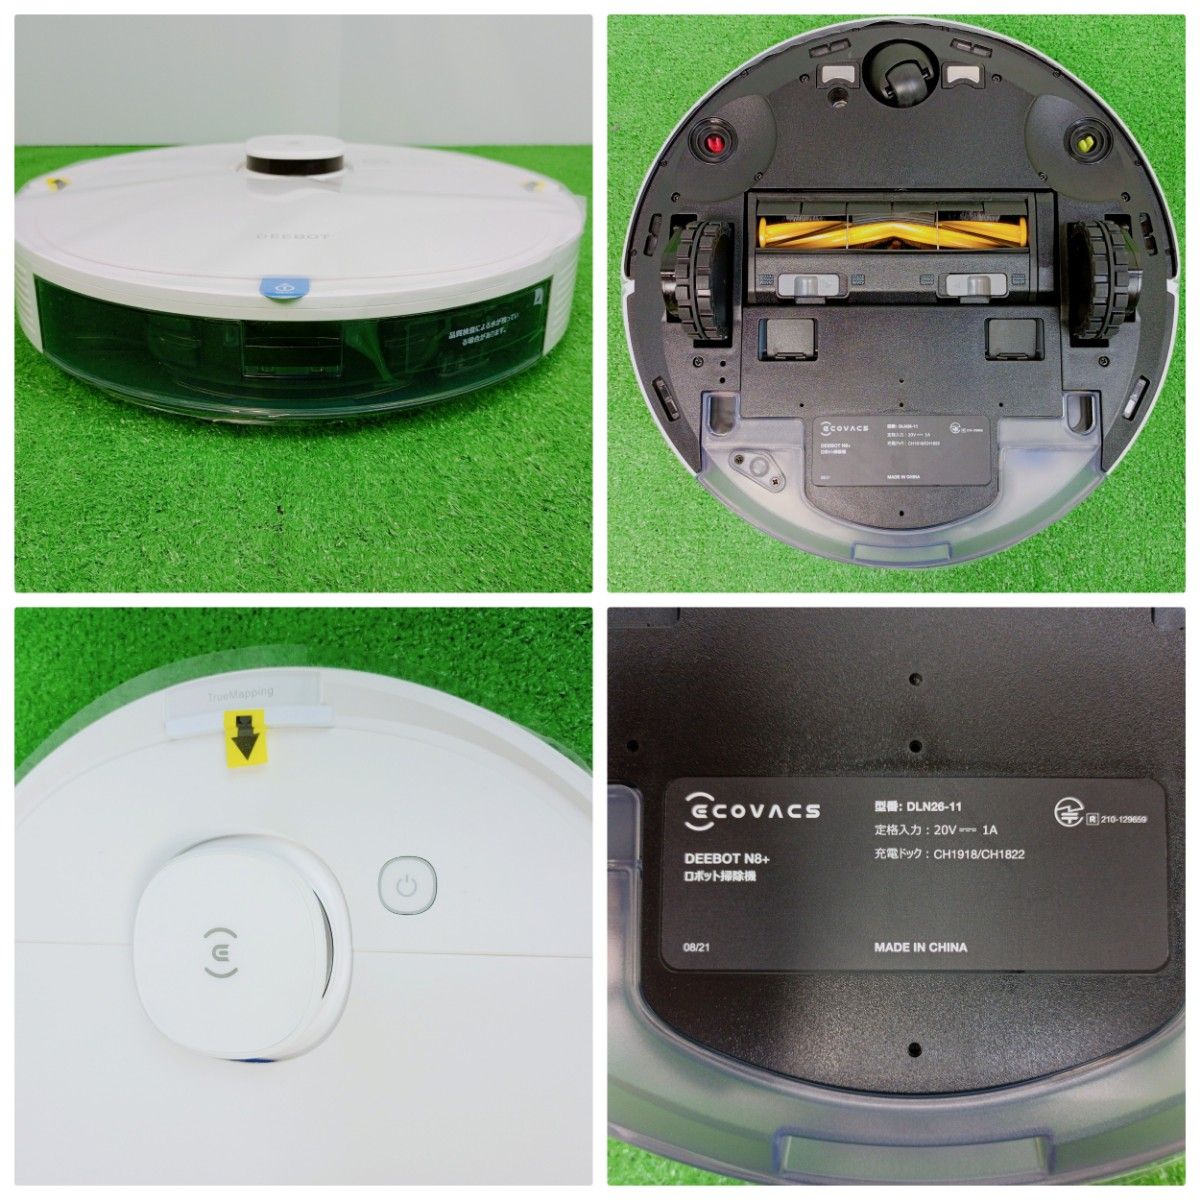 【未使用　付属品完備】エコバックスDeebot N8+ ロボット掃除機　Wi-Fi接続 Alexa対応　Y24012304